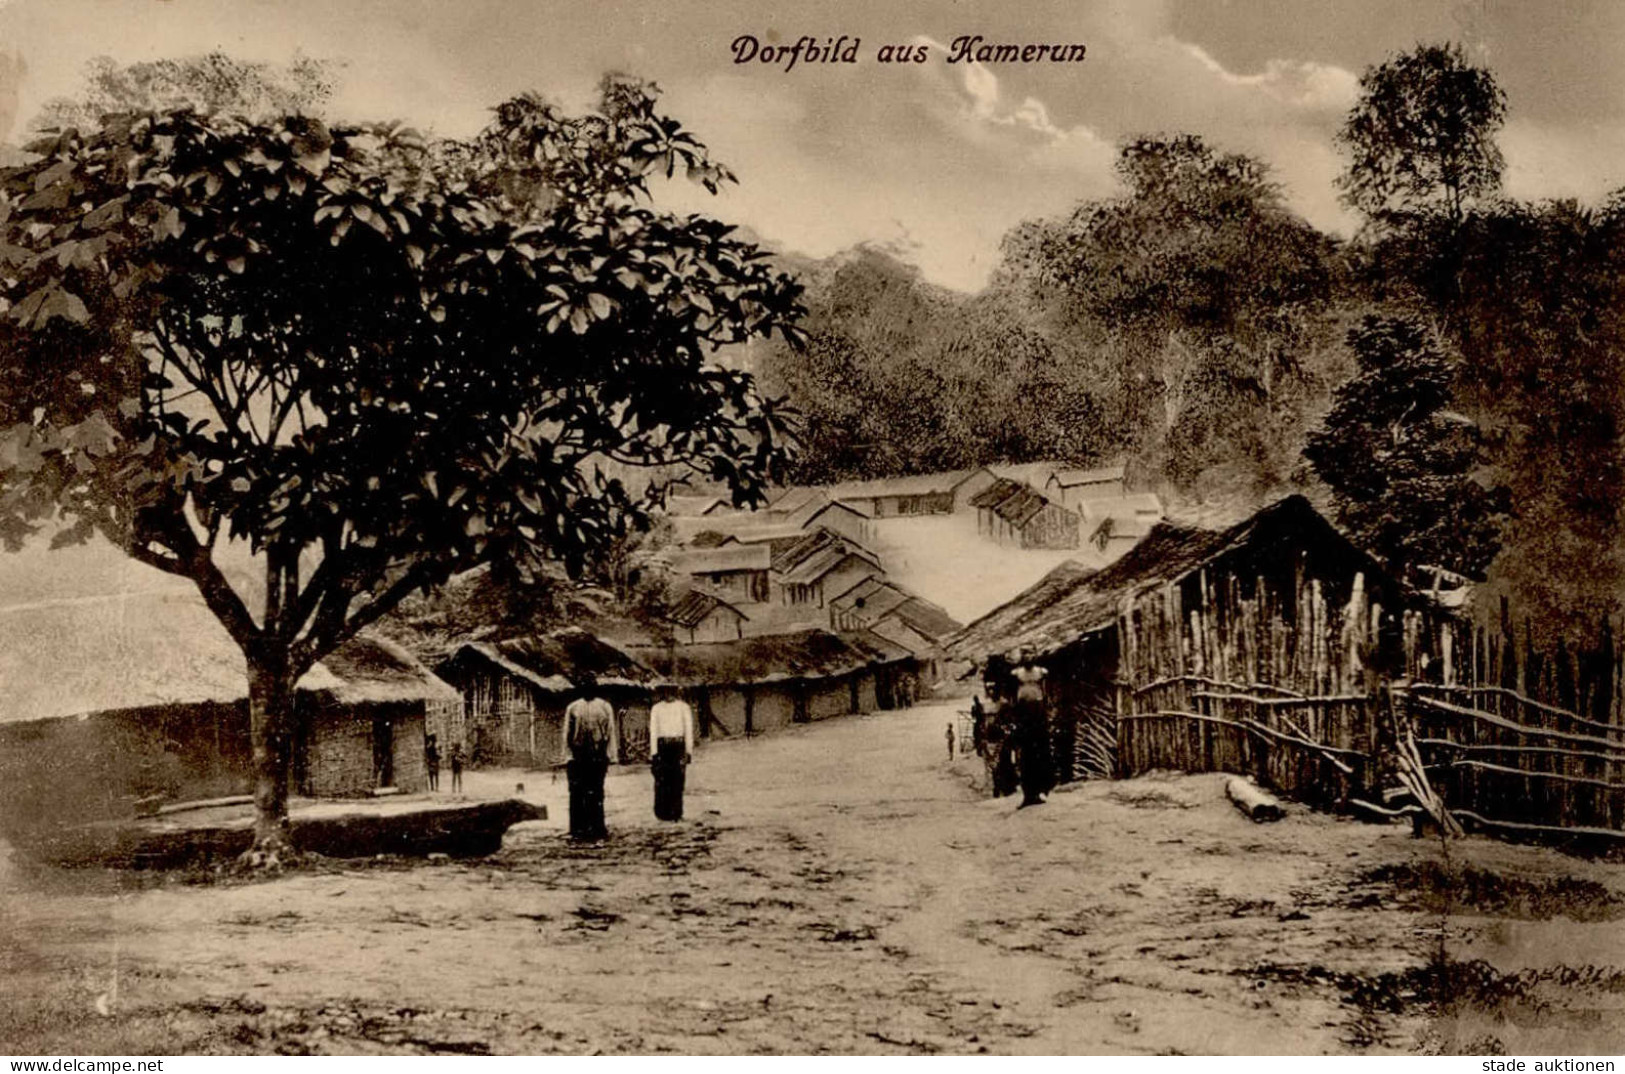 Kolonien Kamerun Dorfbild I-II colonies